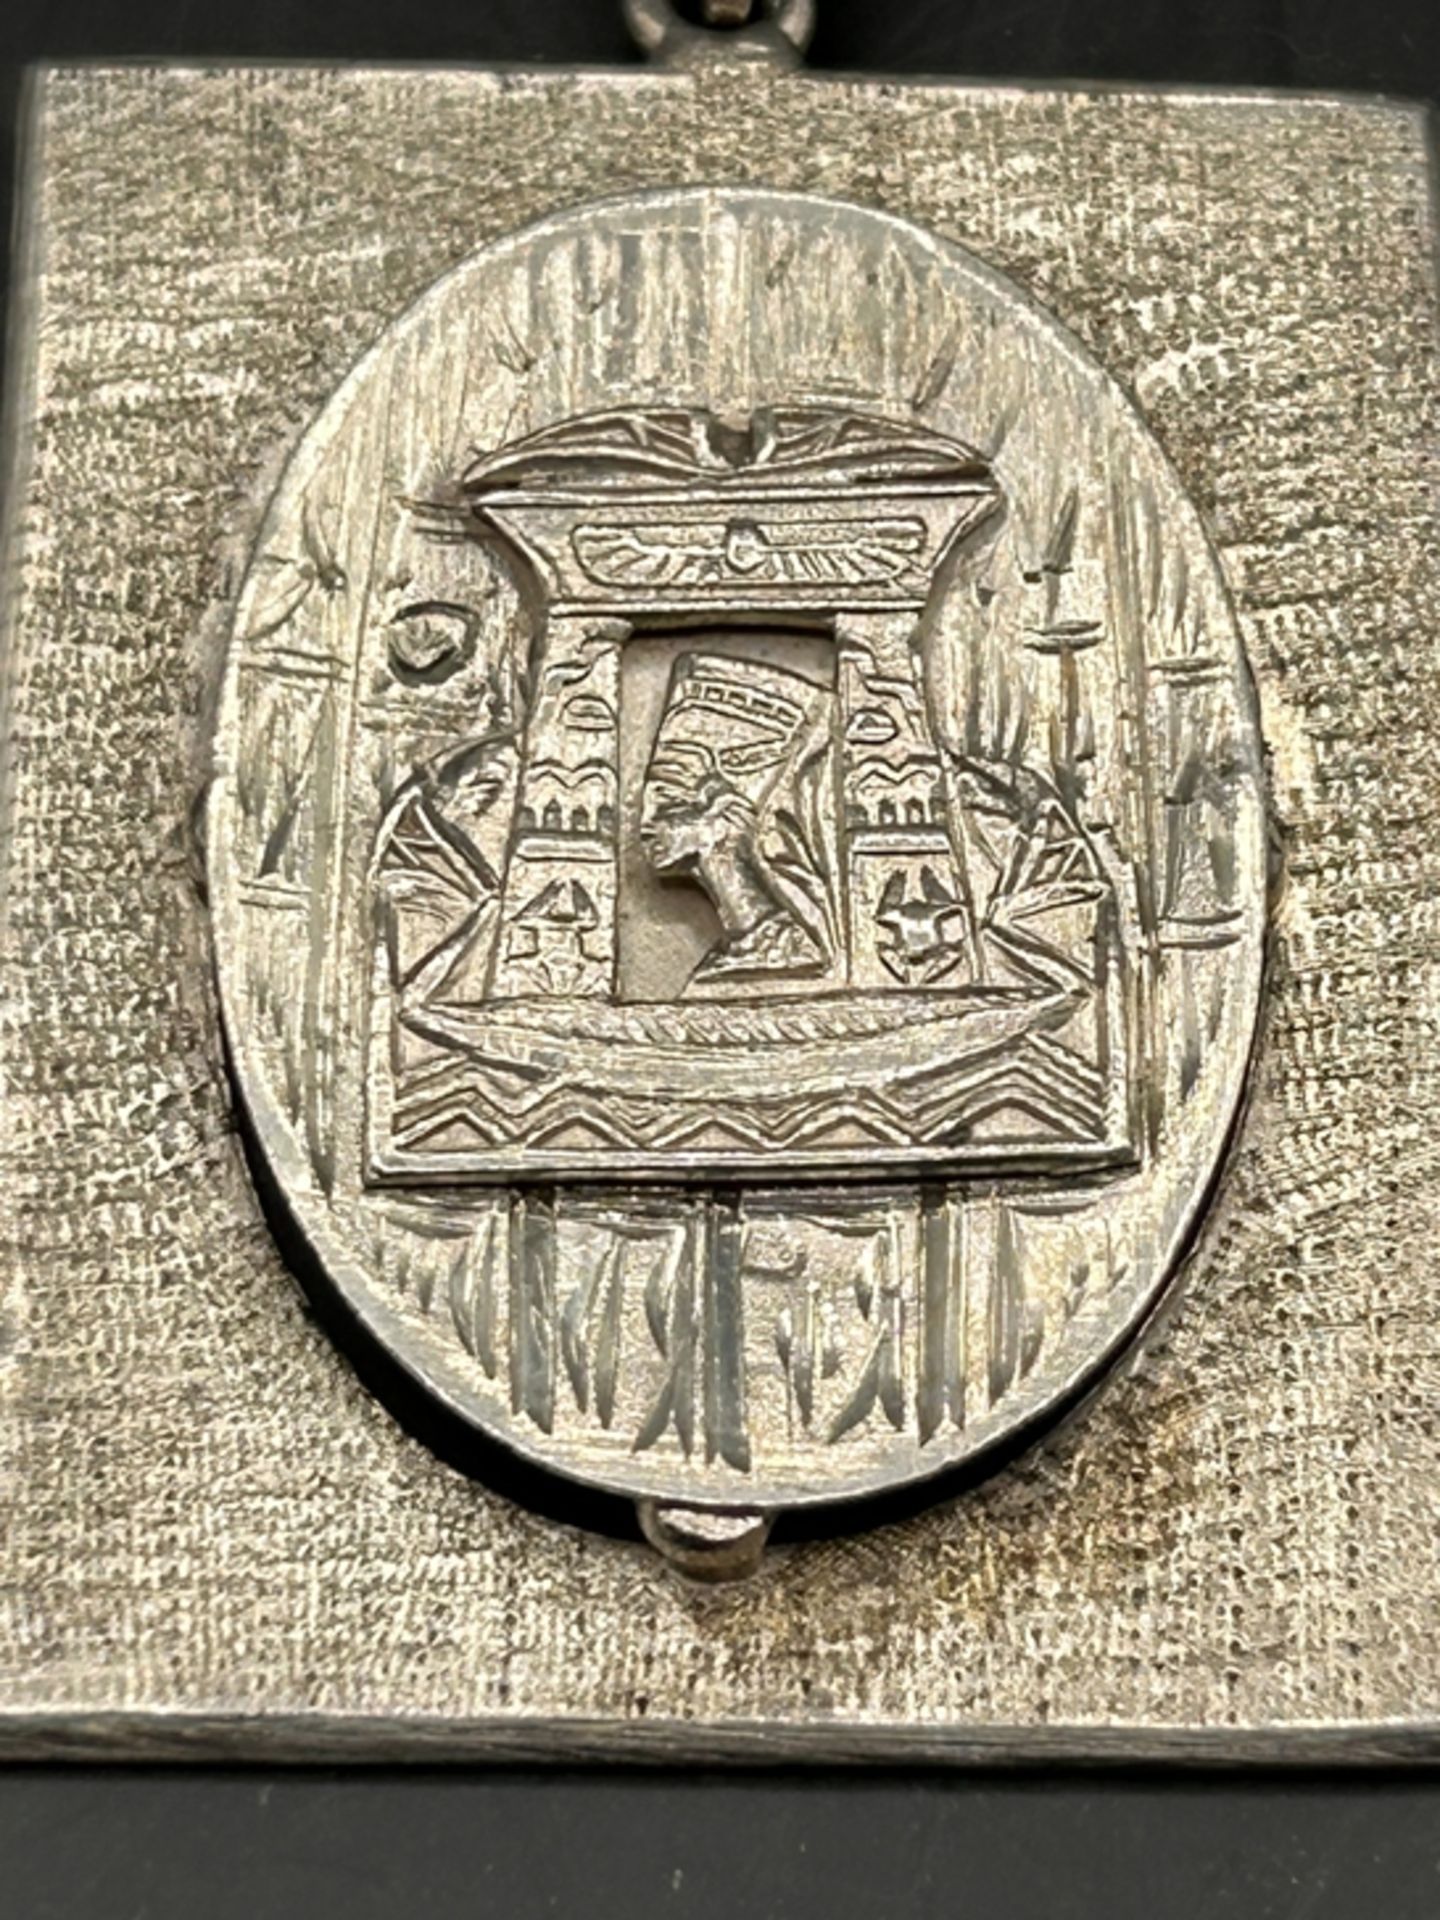 gr. Silber Anhänger mit altägypt. Motiv,arabische Punze, 4,5x3,5 cm, 11,8 gr - Bild 2 aus 3